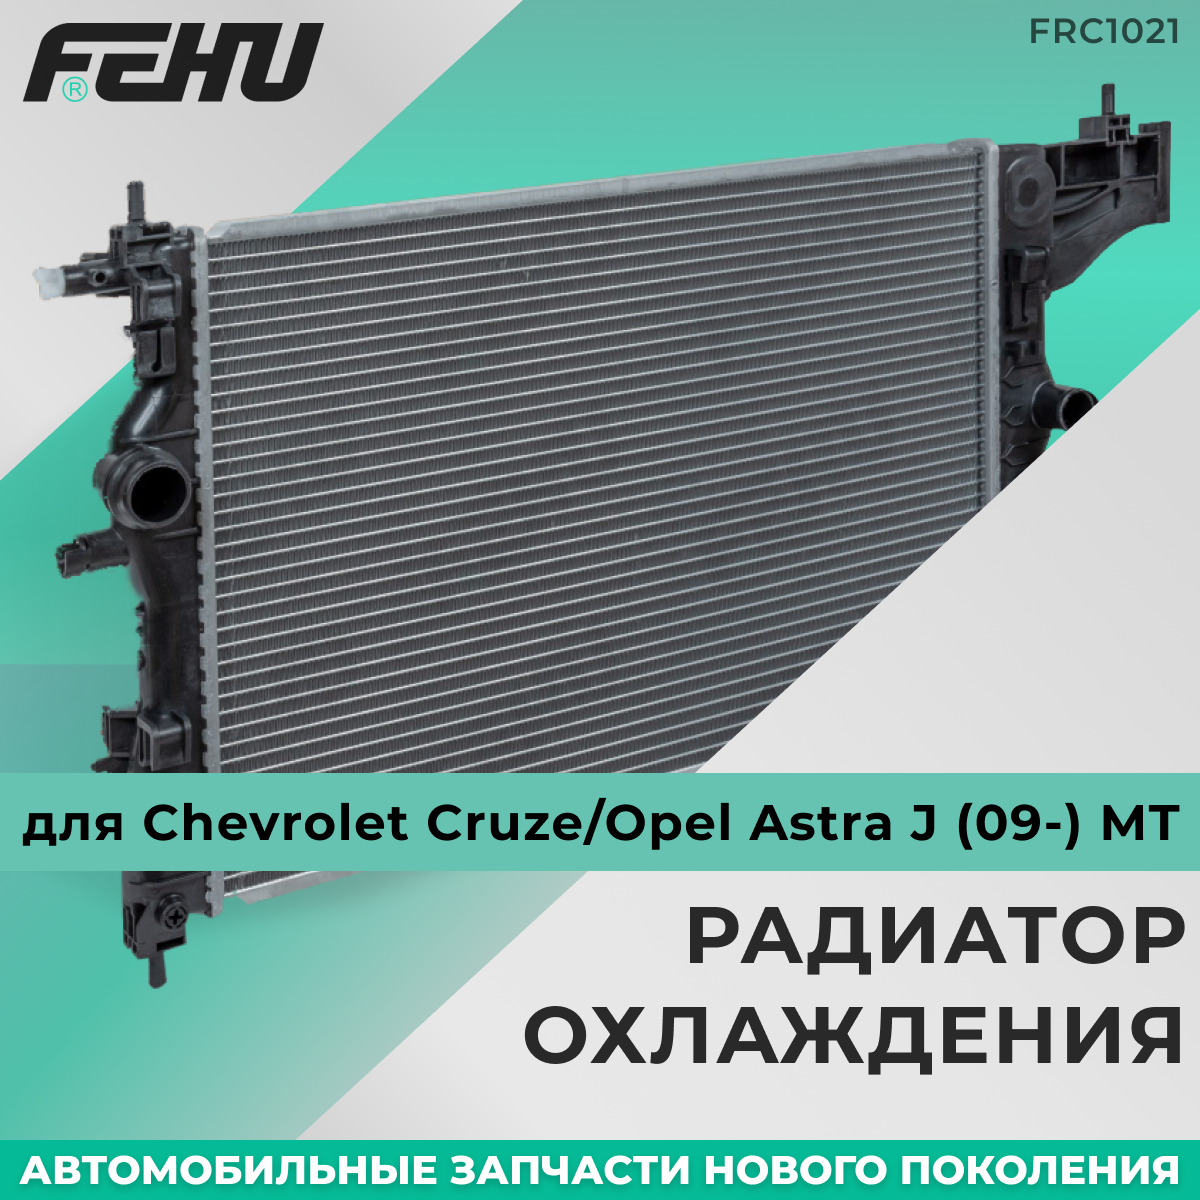 Радиатор охлаждения FEHU (феху) Chevrolet Aveo T255 (08-) 1.4i MT арт. 96992881; 96942183; 95227753; 95227739